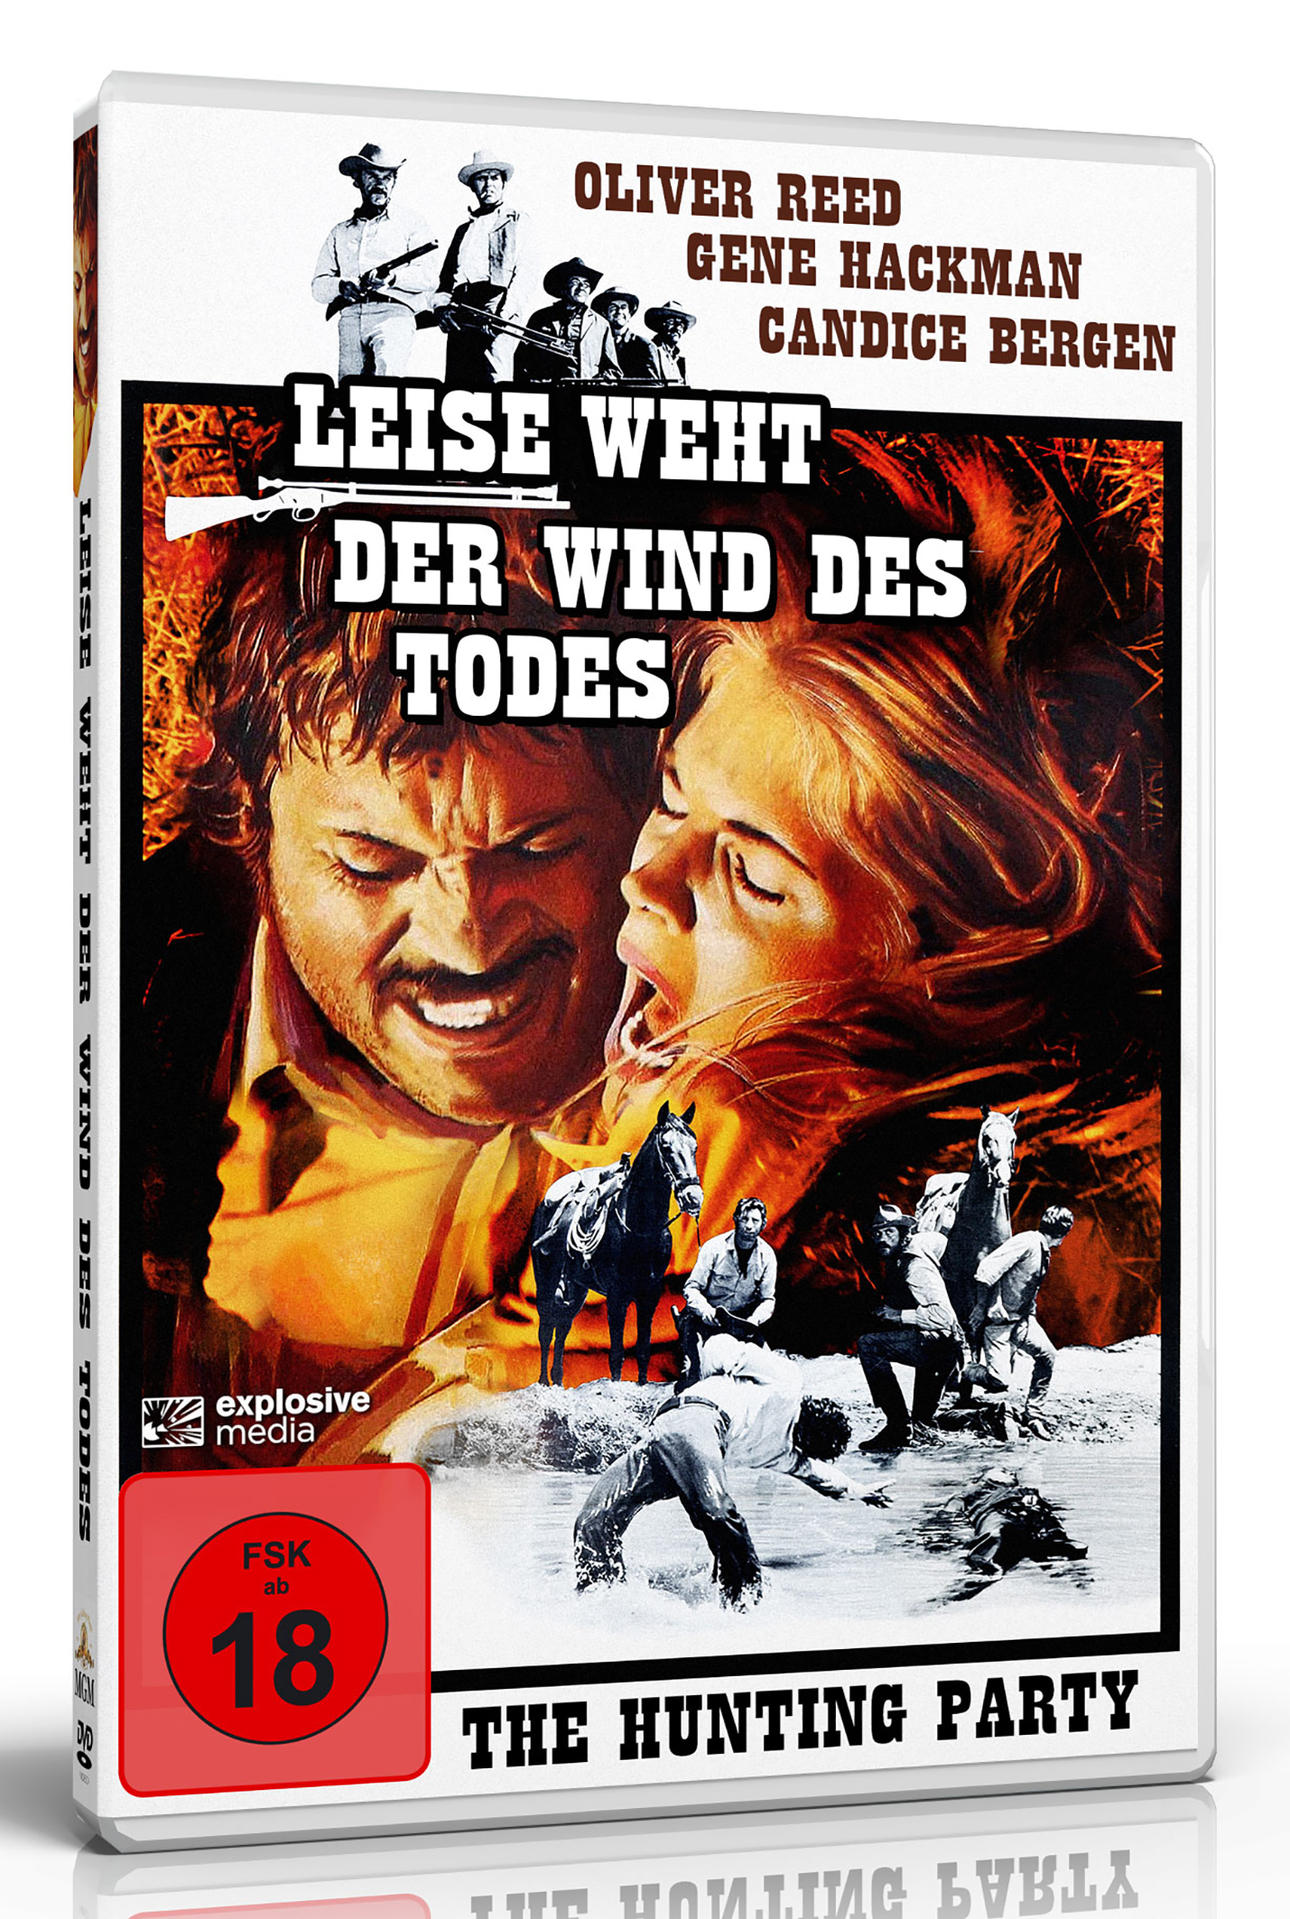 DVD weht des der Wind Todes Leise